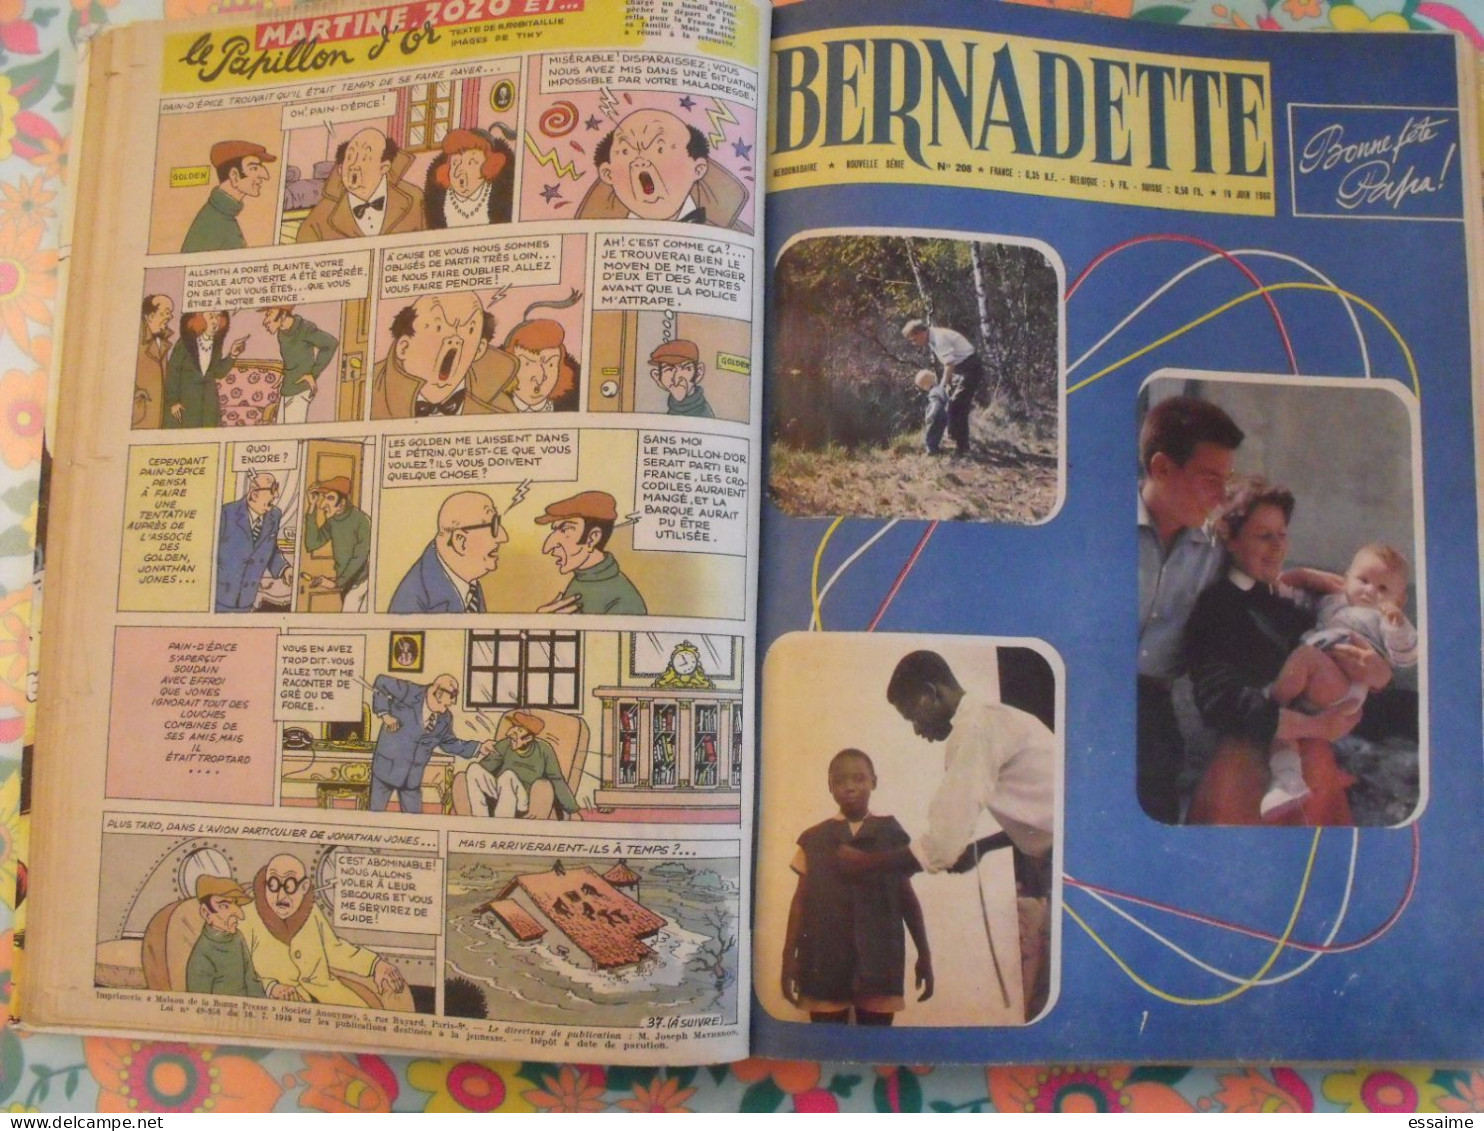 recueil BD Bernadette 1960 n° 206 à 218. Calvo (moustache et trotinette). pierdec tiky lay hempay colomb. à redécouvrir